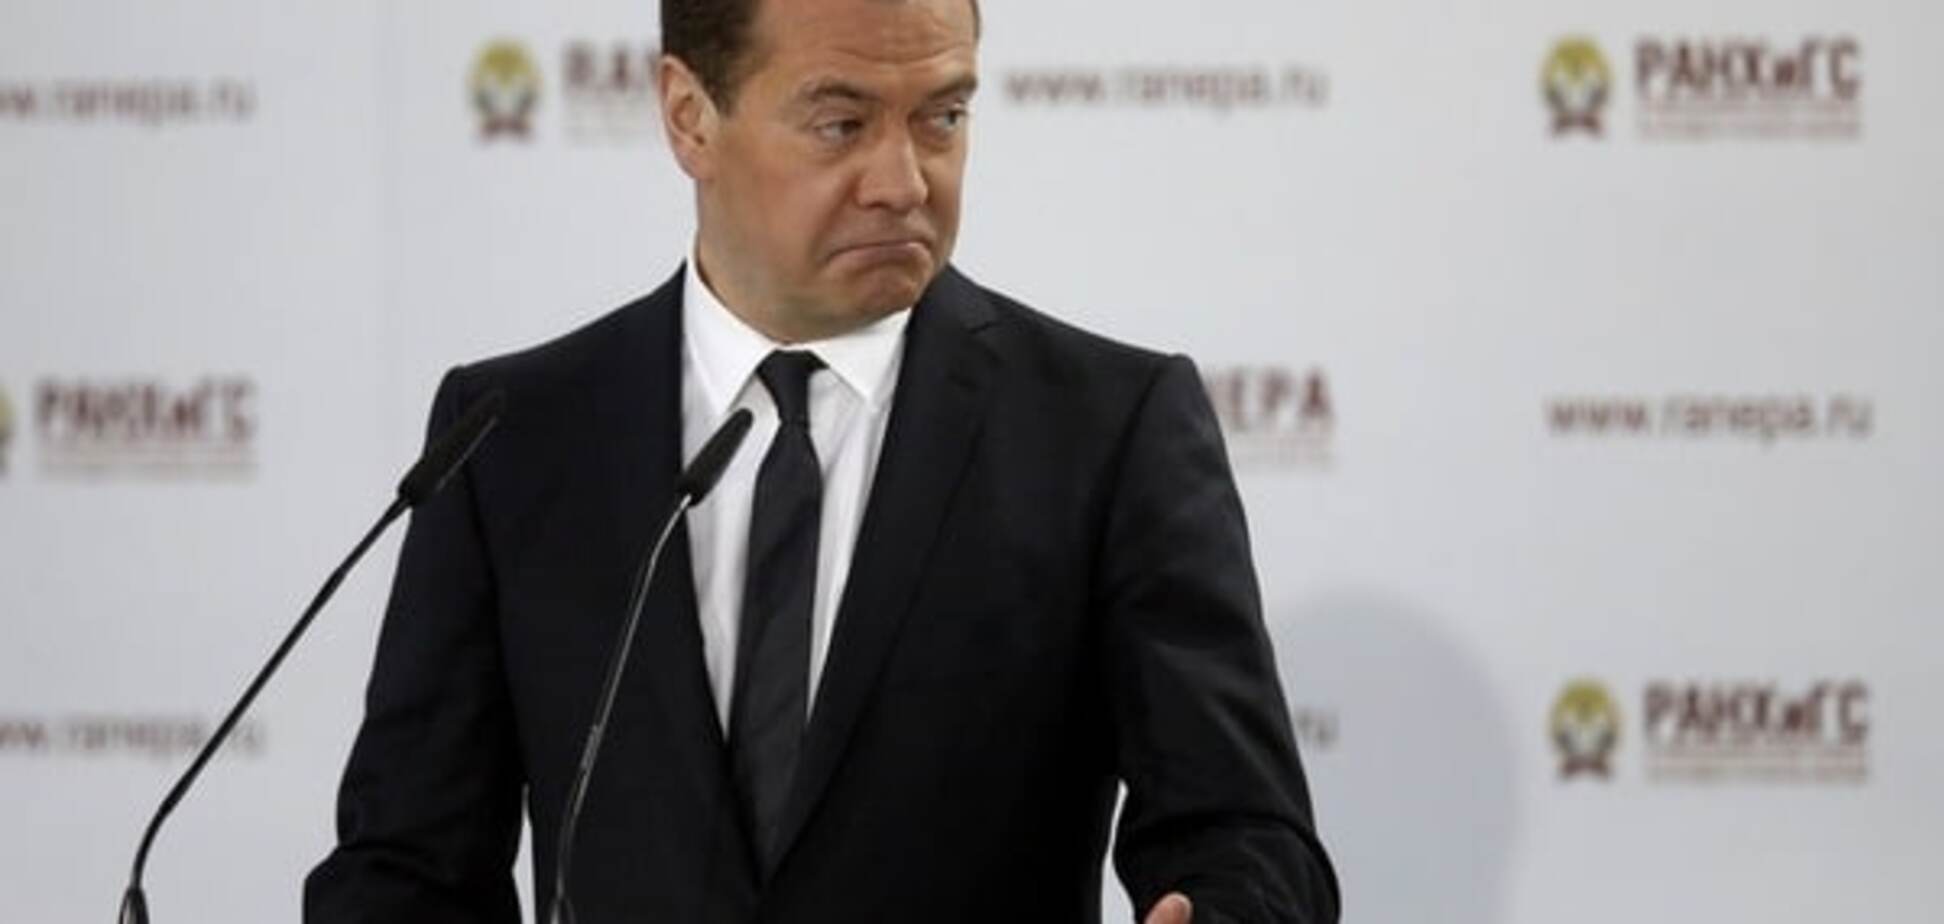 Живите по средствам: Медведев впервые откровенно призвал россиян готовиться к худшему